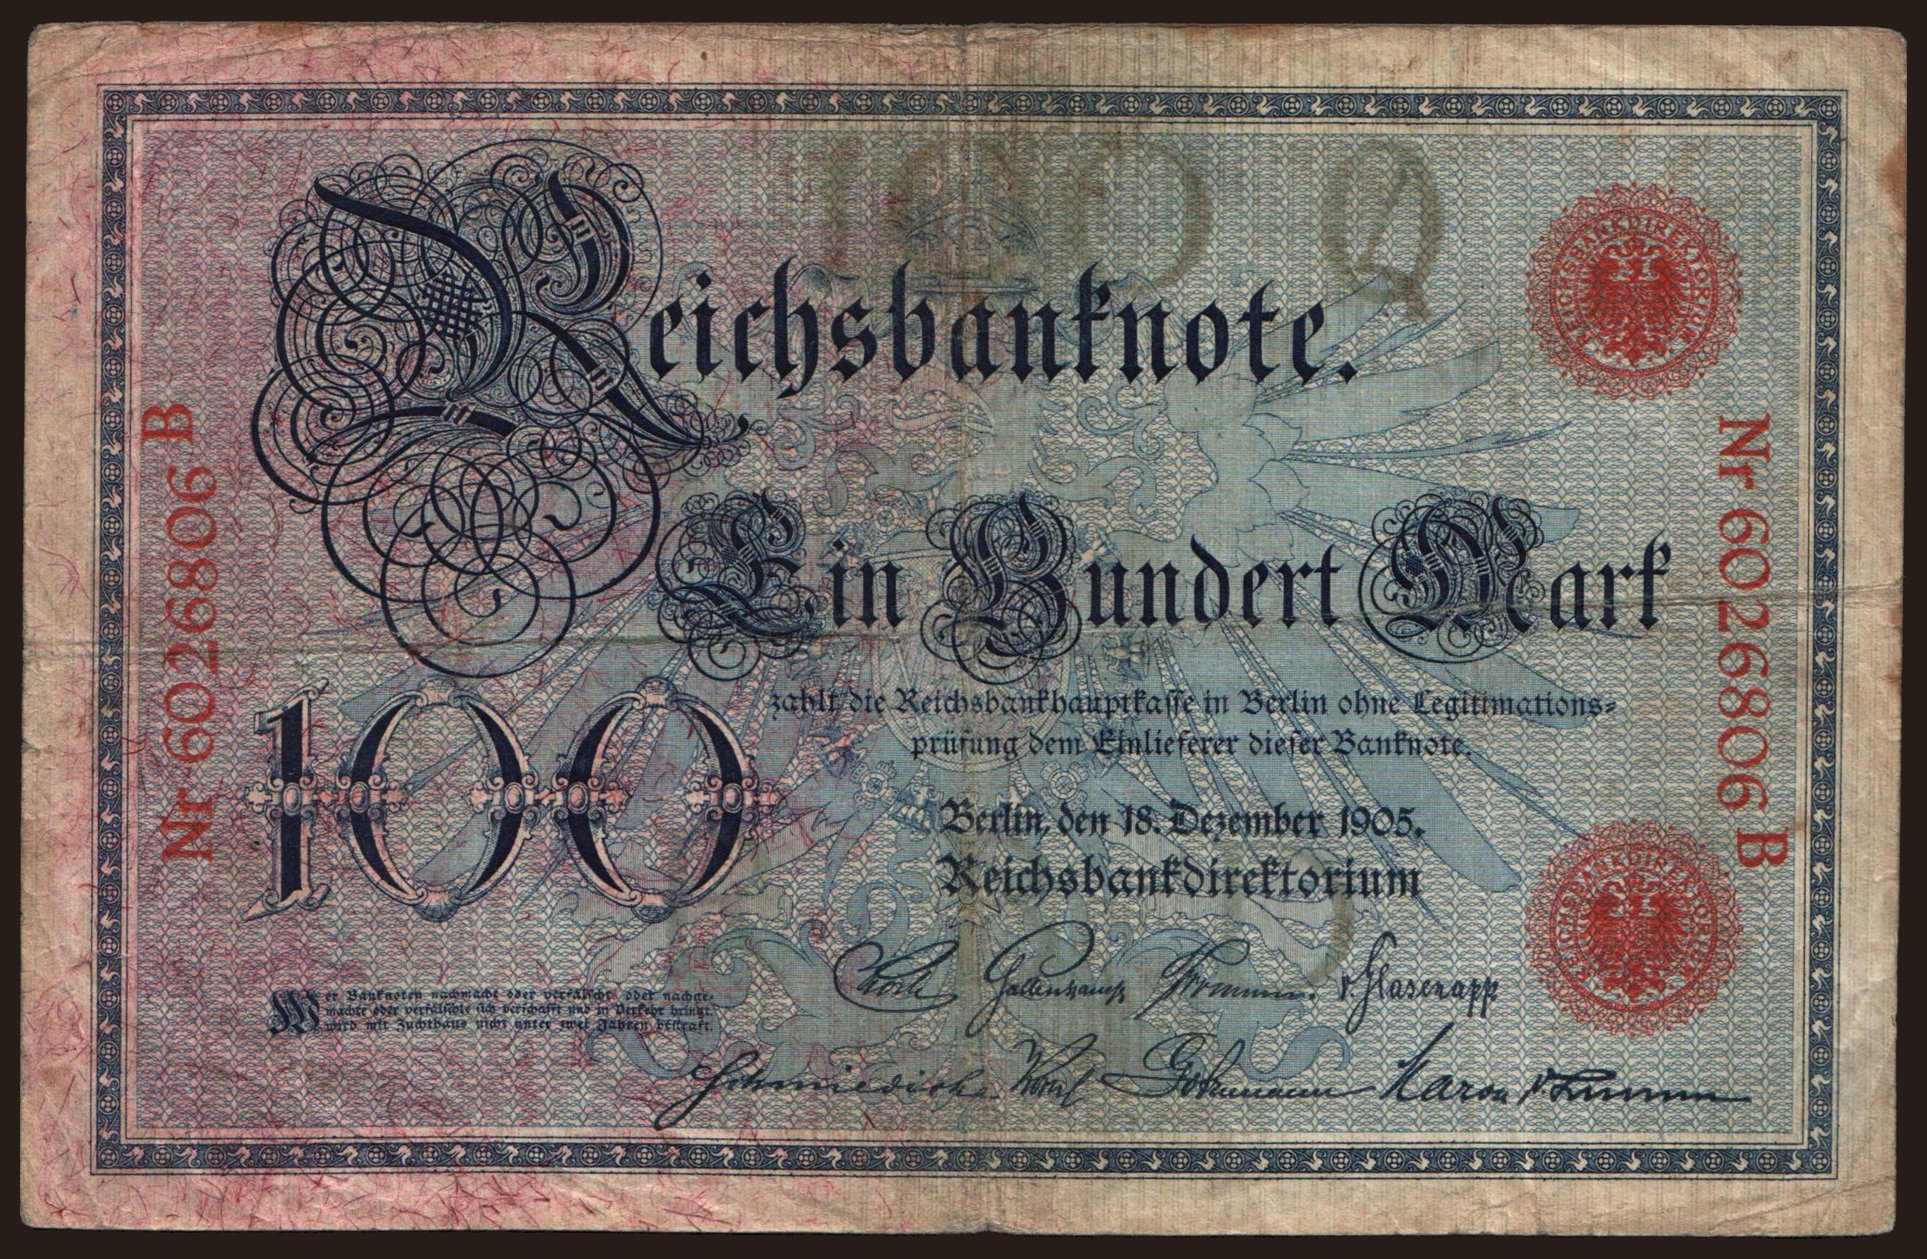 100 Mark, 1905